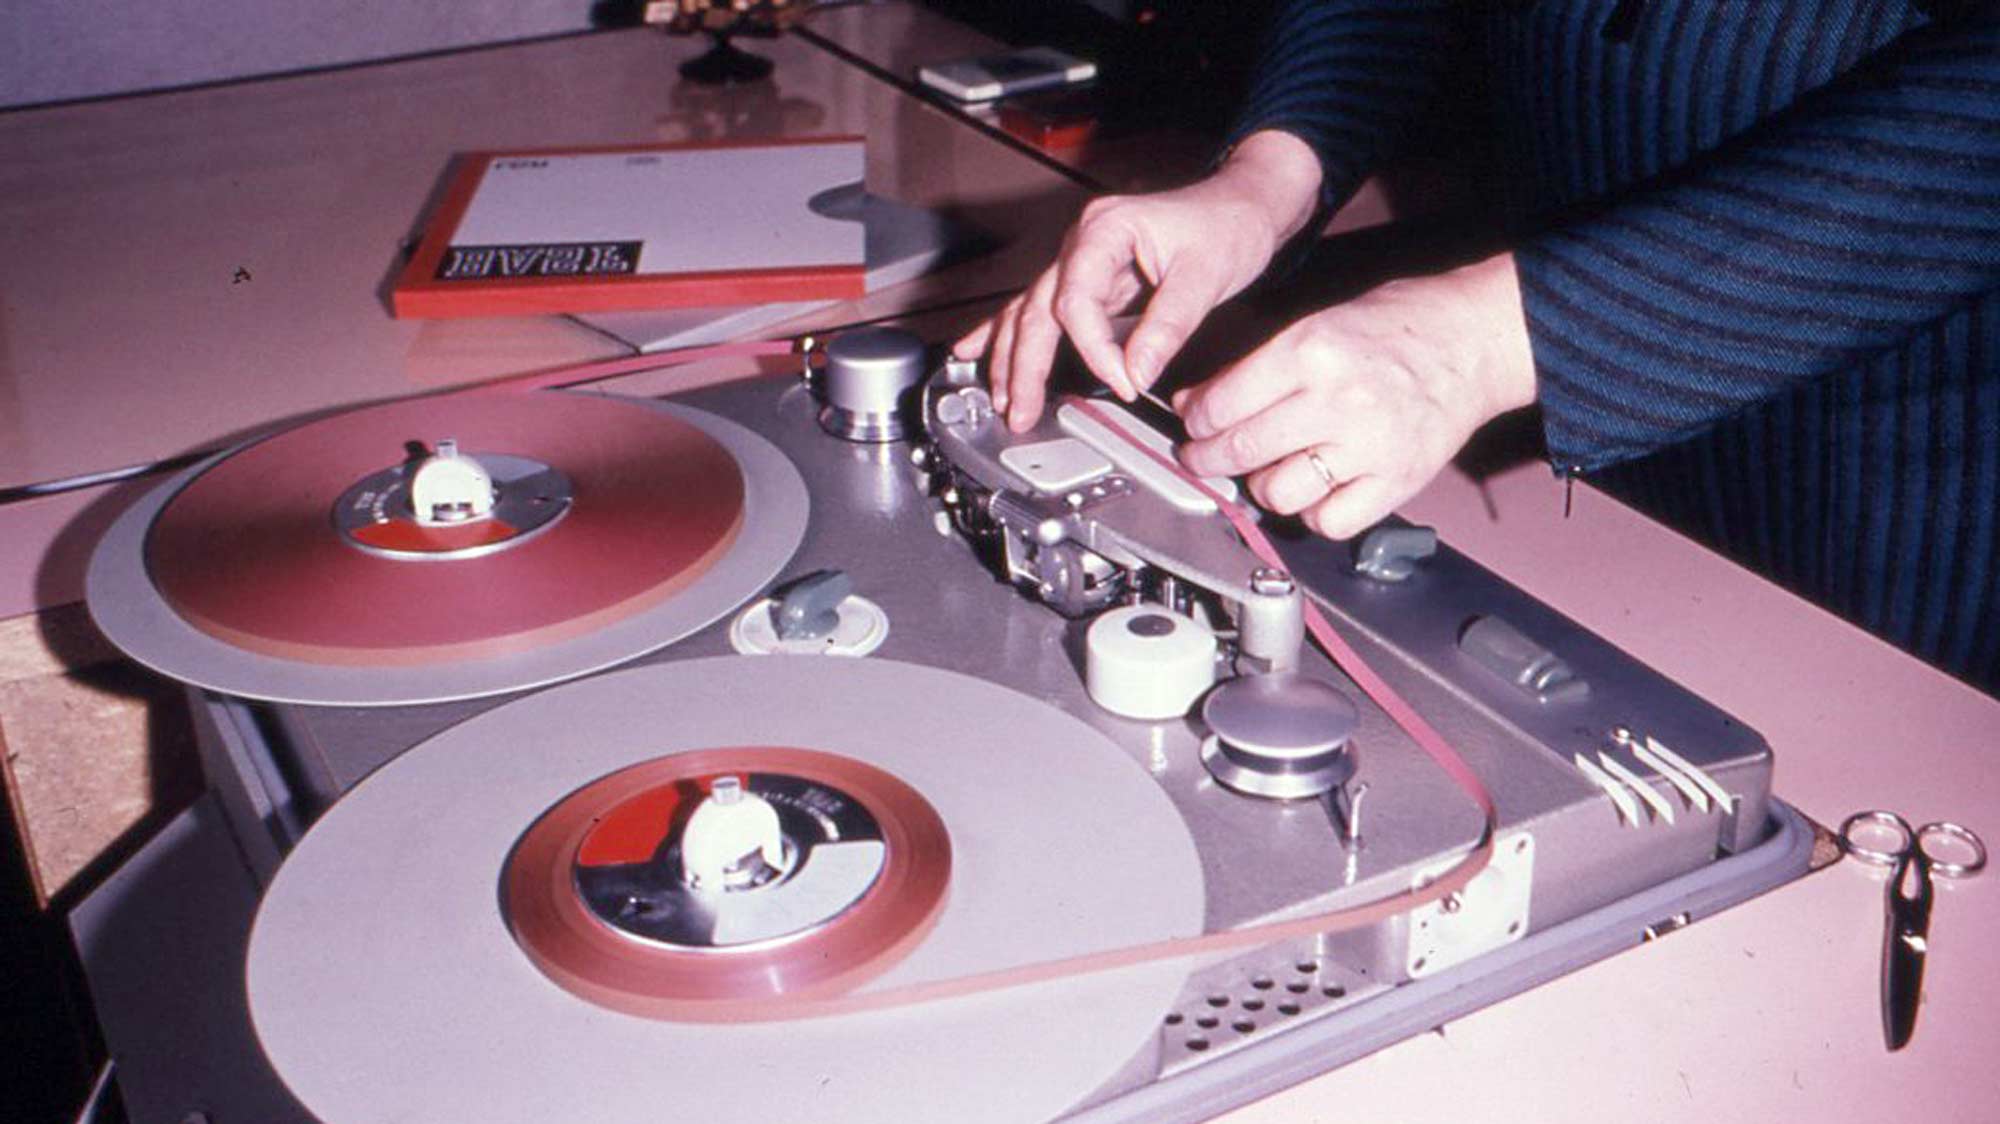 Arbeit an der Bandmaschine – sie dient zur analogen Tonaufzeichnung auf Tonbänder. Viele Jahre ist die Bandmaschine das wichtigste Werkzeug der Tontechniker. Erst mit dem Aufkommen der Digitaltechnik werden die analogen Tonbandgeräte vom Markt verdrängt.